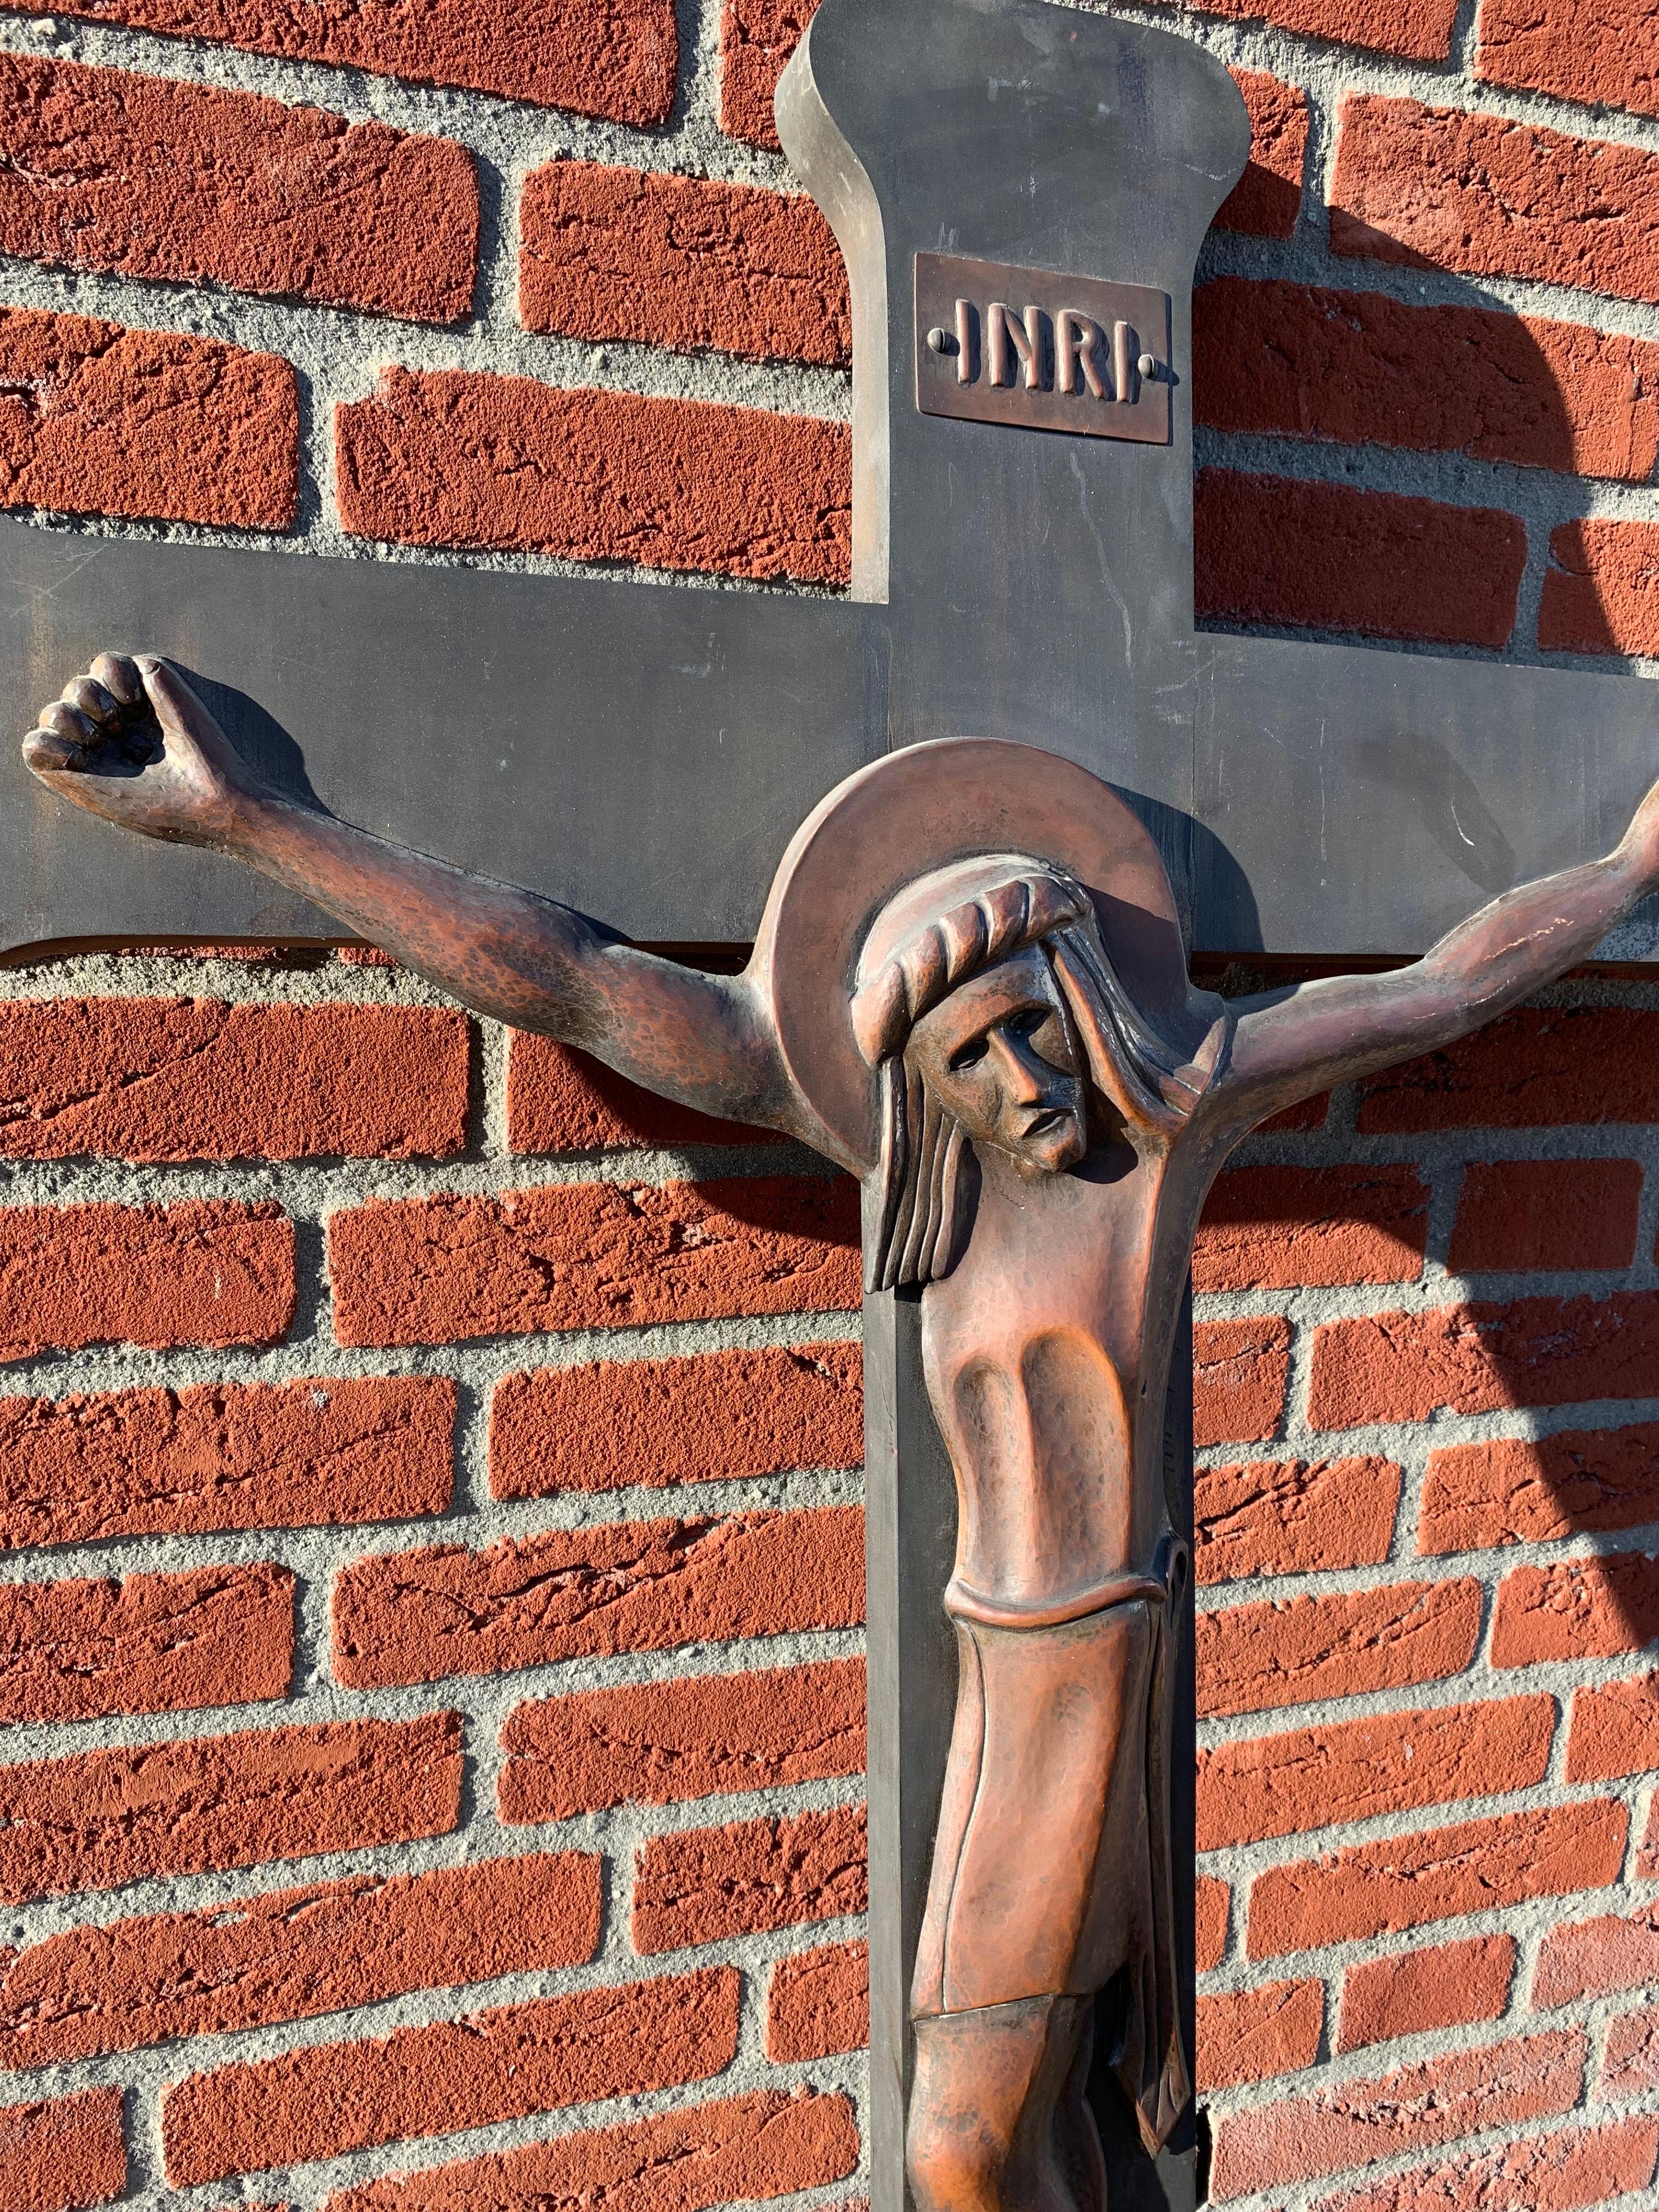 Kunstvolle und eindrucksvolle Skulptur von Christus am Kreuz.

Dieses einzigartige und große Kruzifix im Arts & Crafts-Stil stammt aus den frühen 1900er Jahren und ist in seinem Aussehen und seiner Haptik mit nichts vergleichbar, was Sie je gesehen